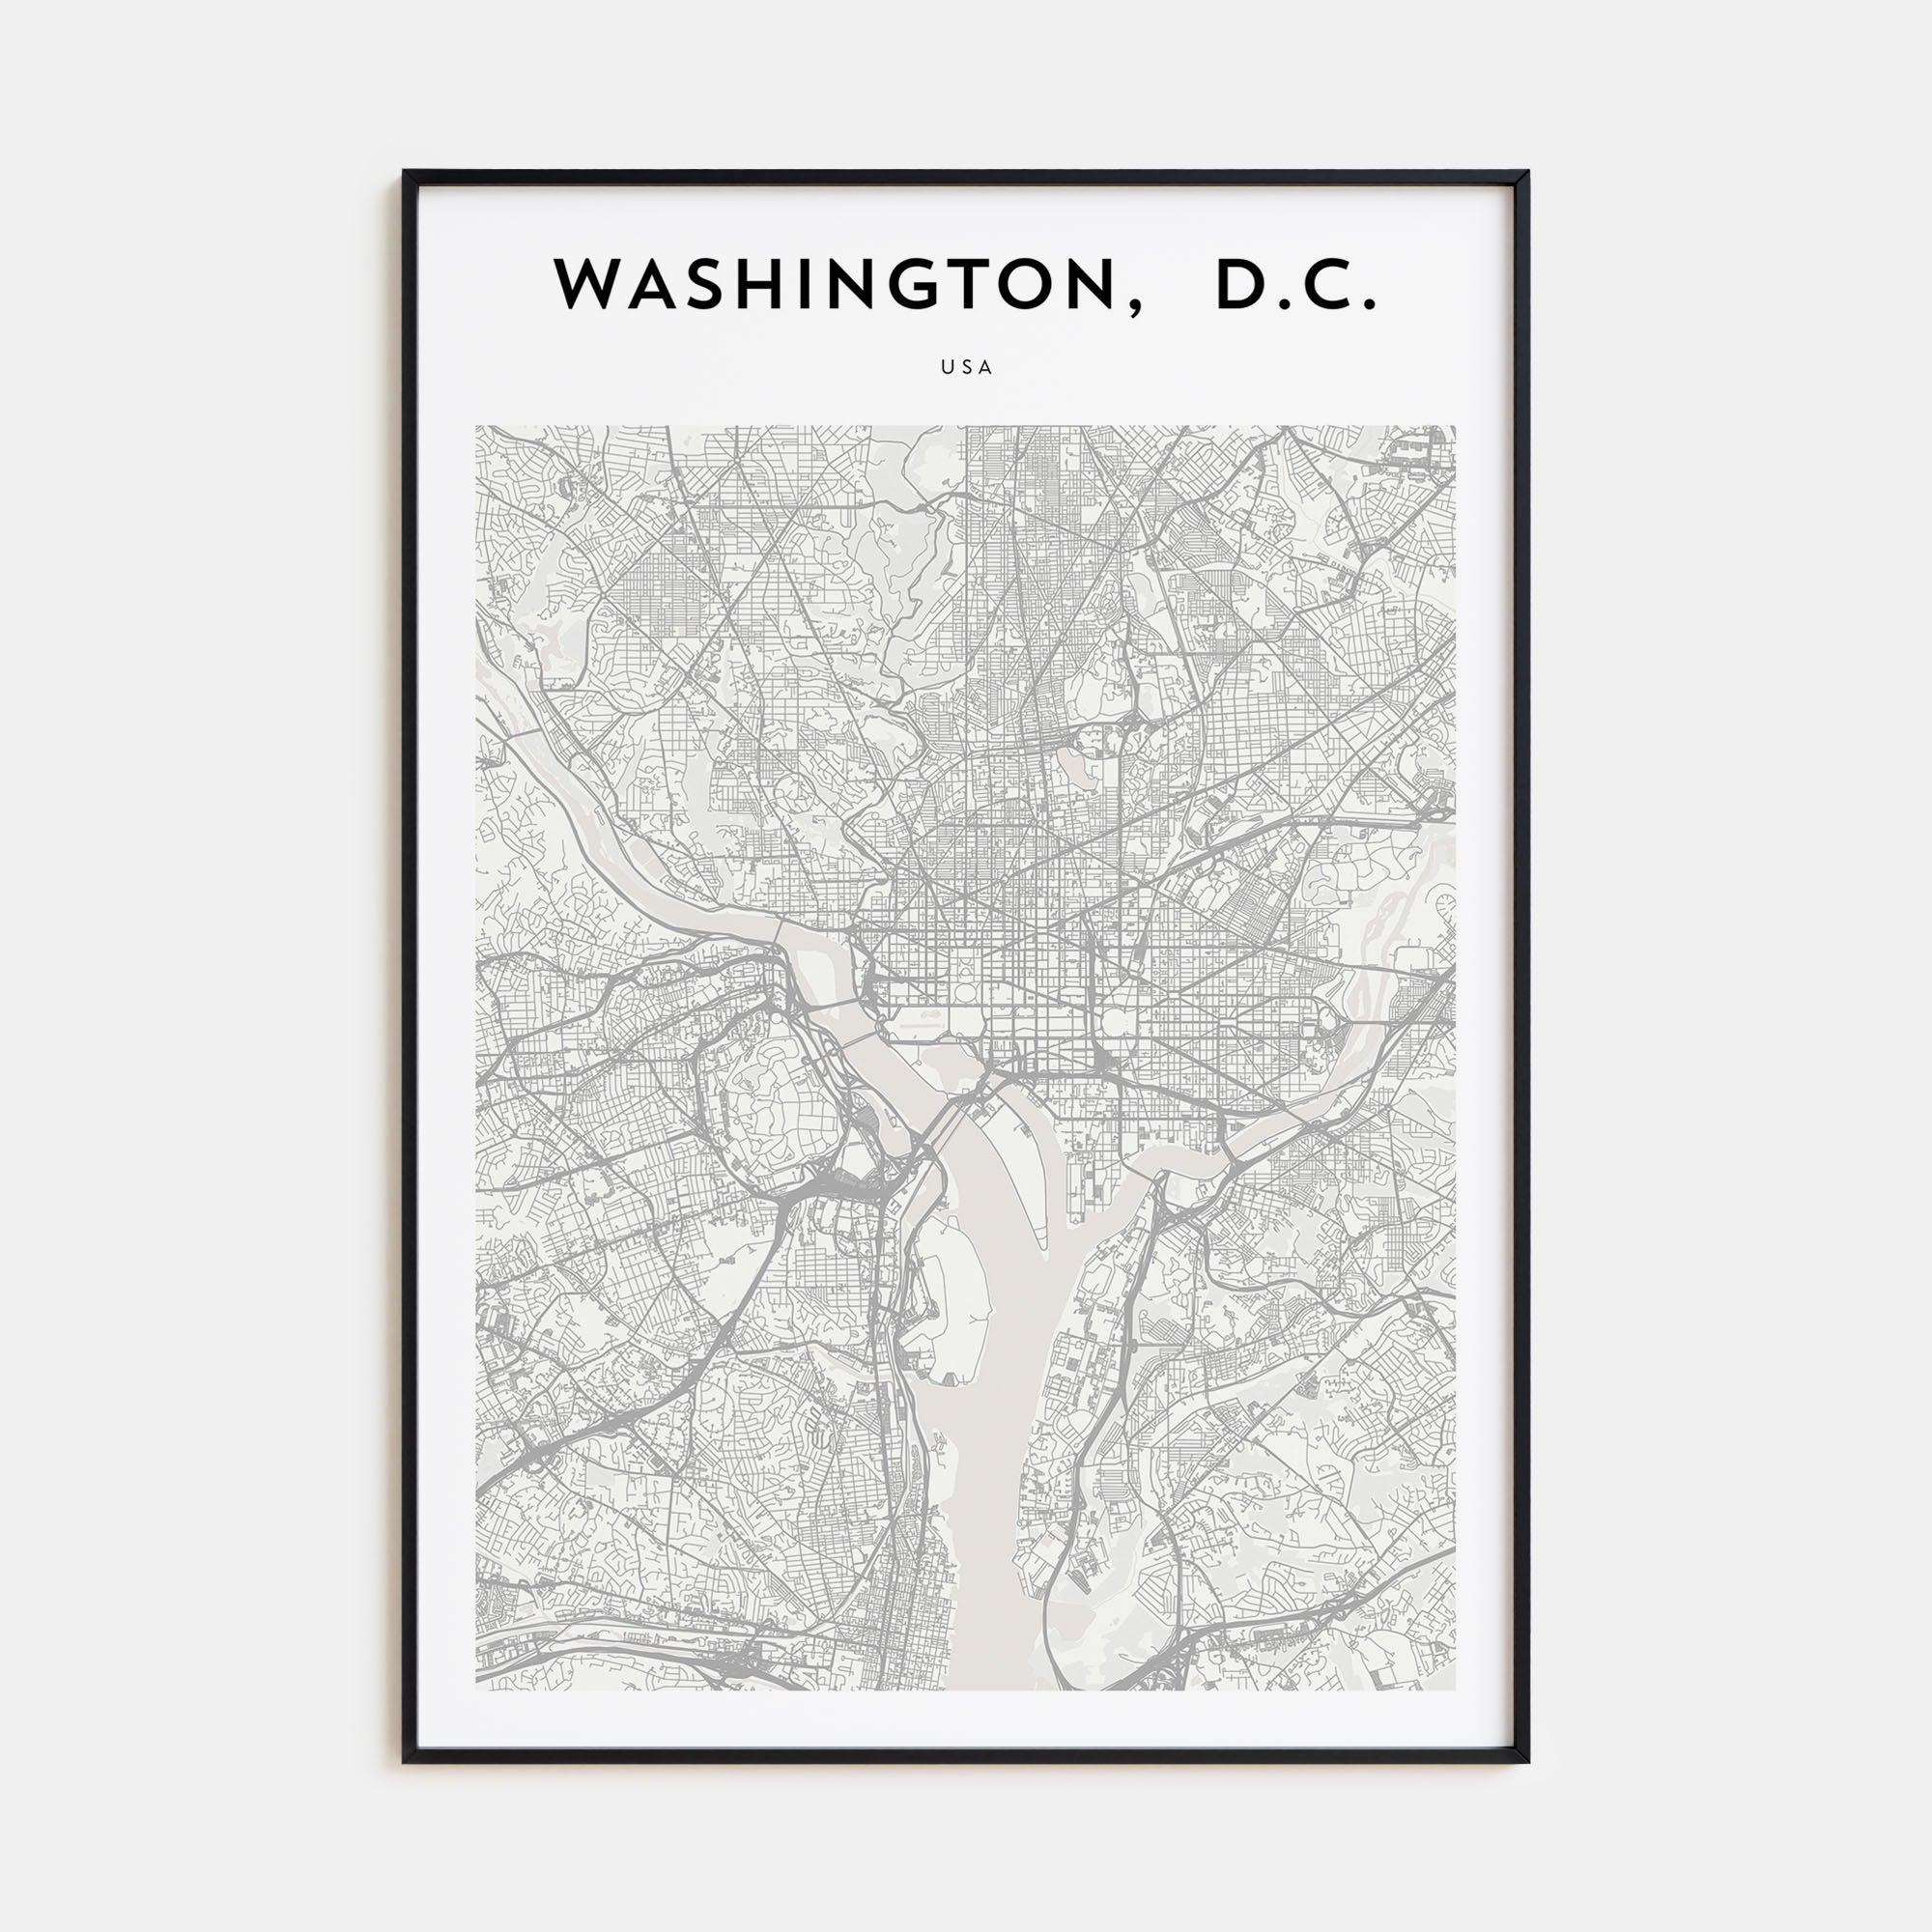 Washington, D.C. Map Portrait Poster